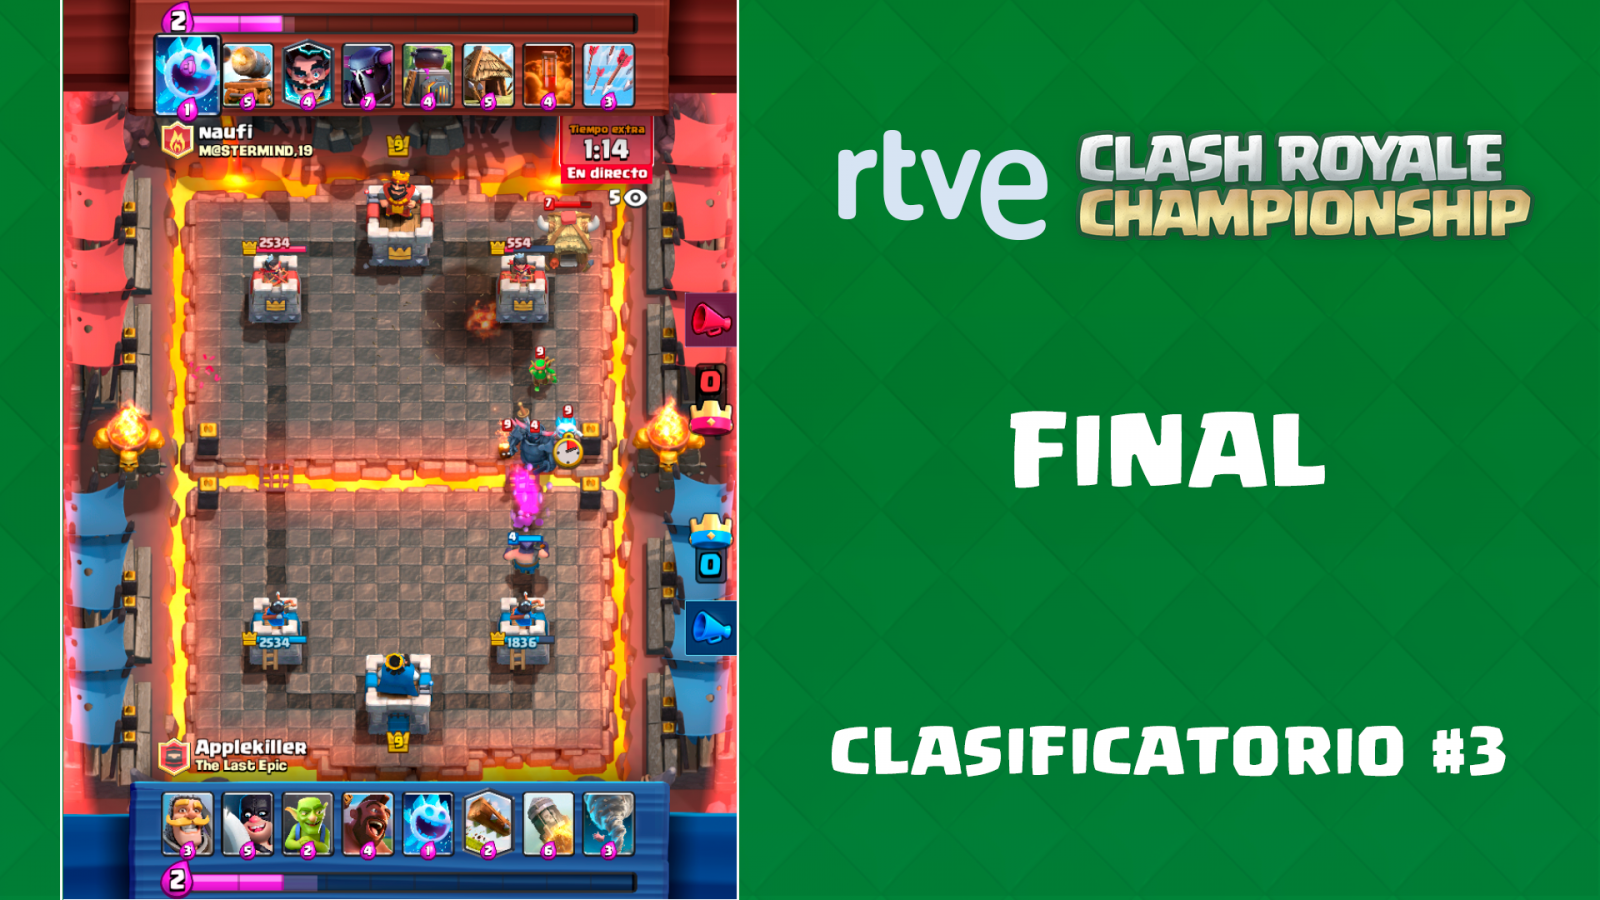 RTVE Clash Royale Championship. Clasificatorio #3 - Final